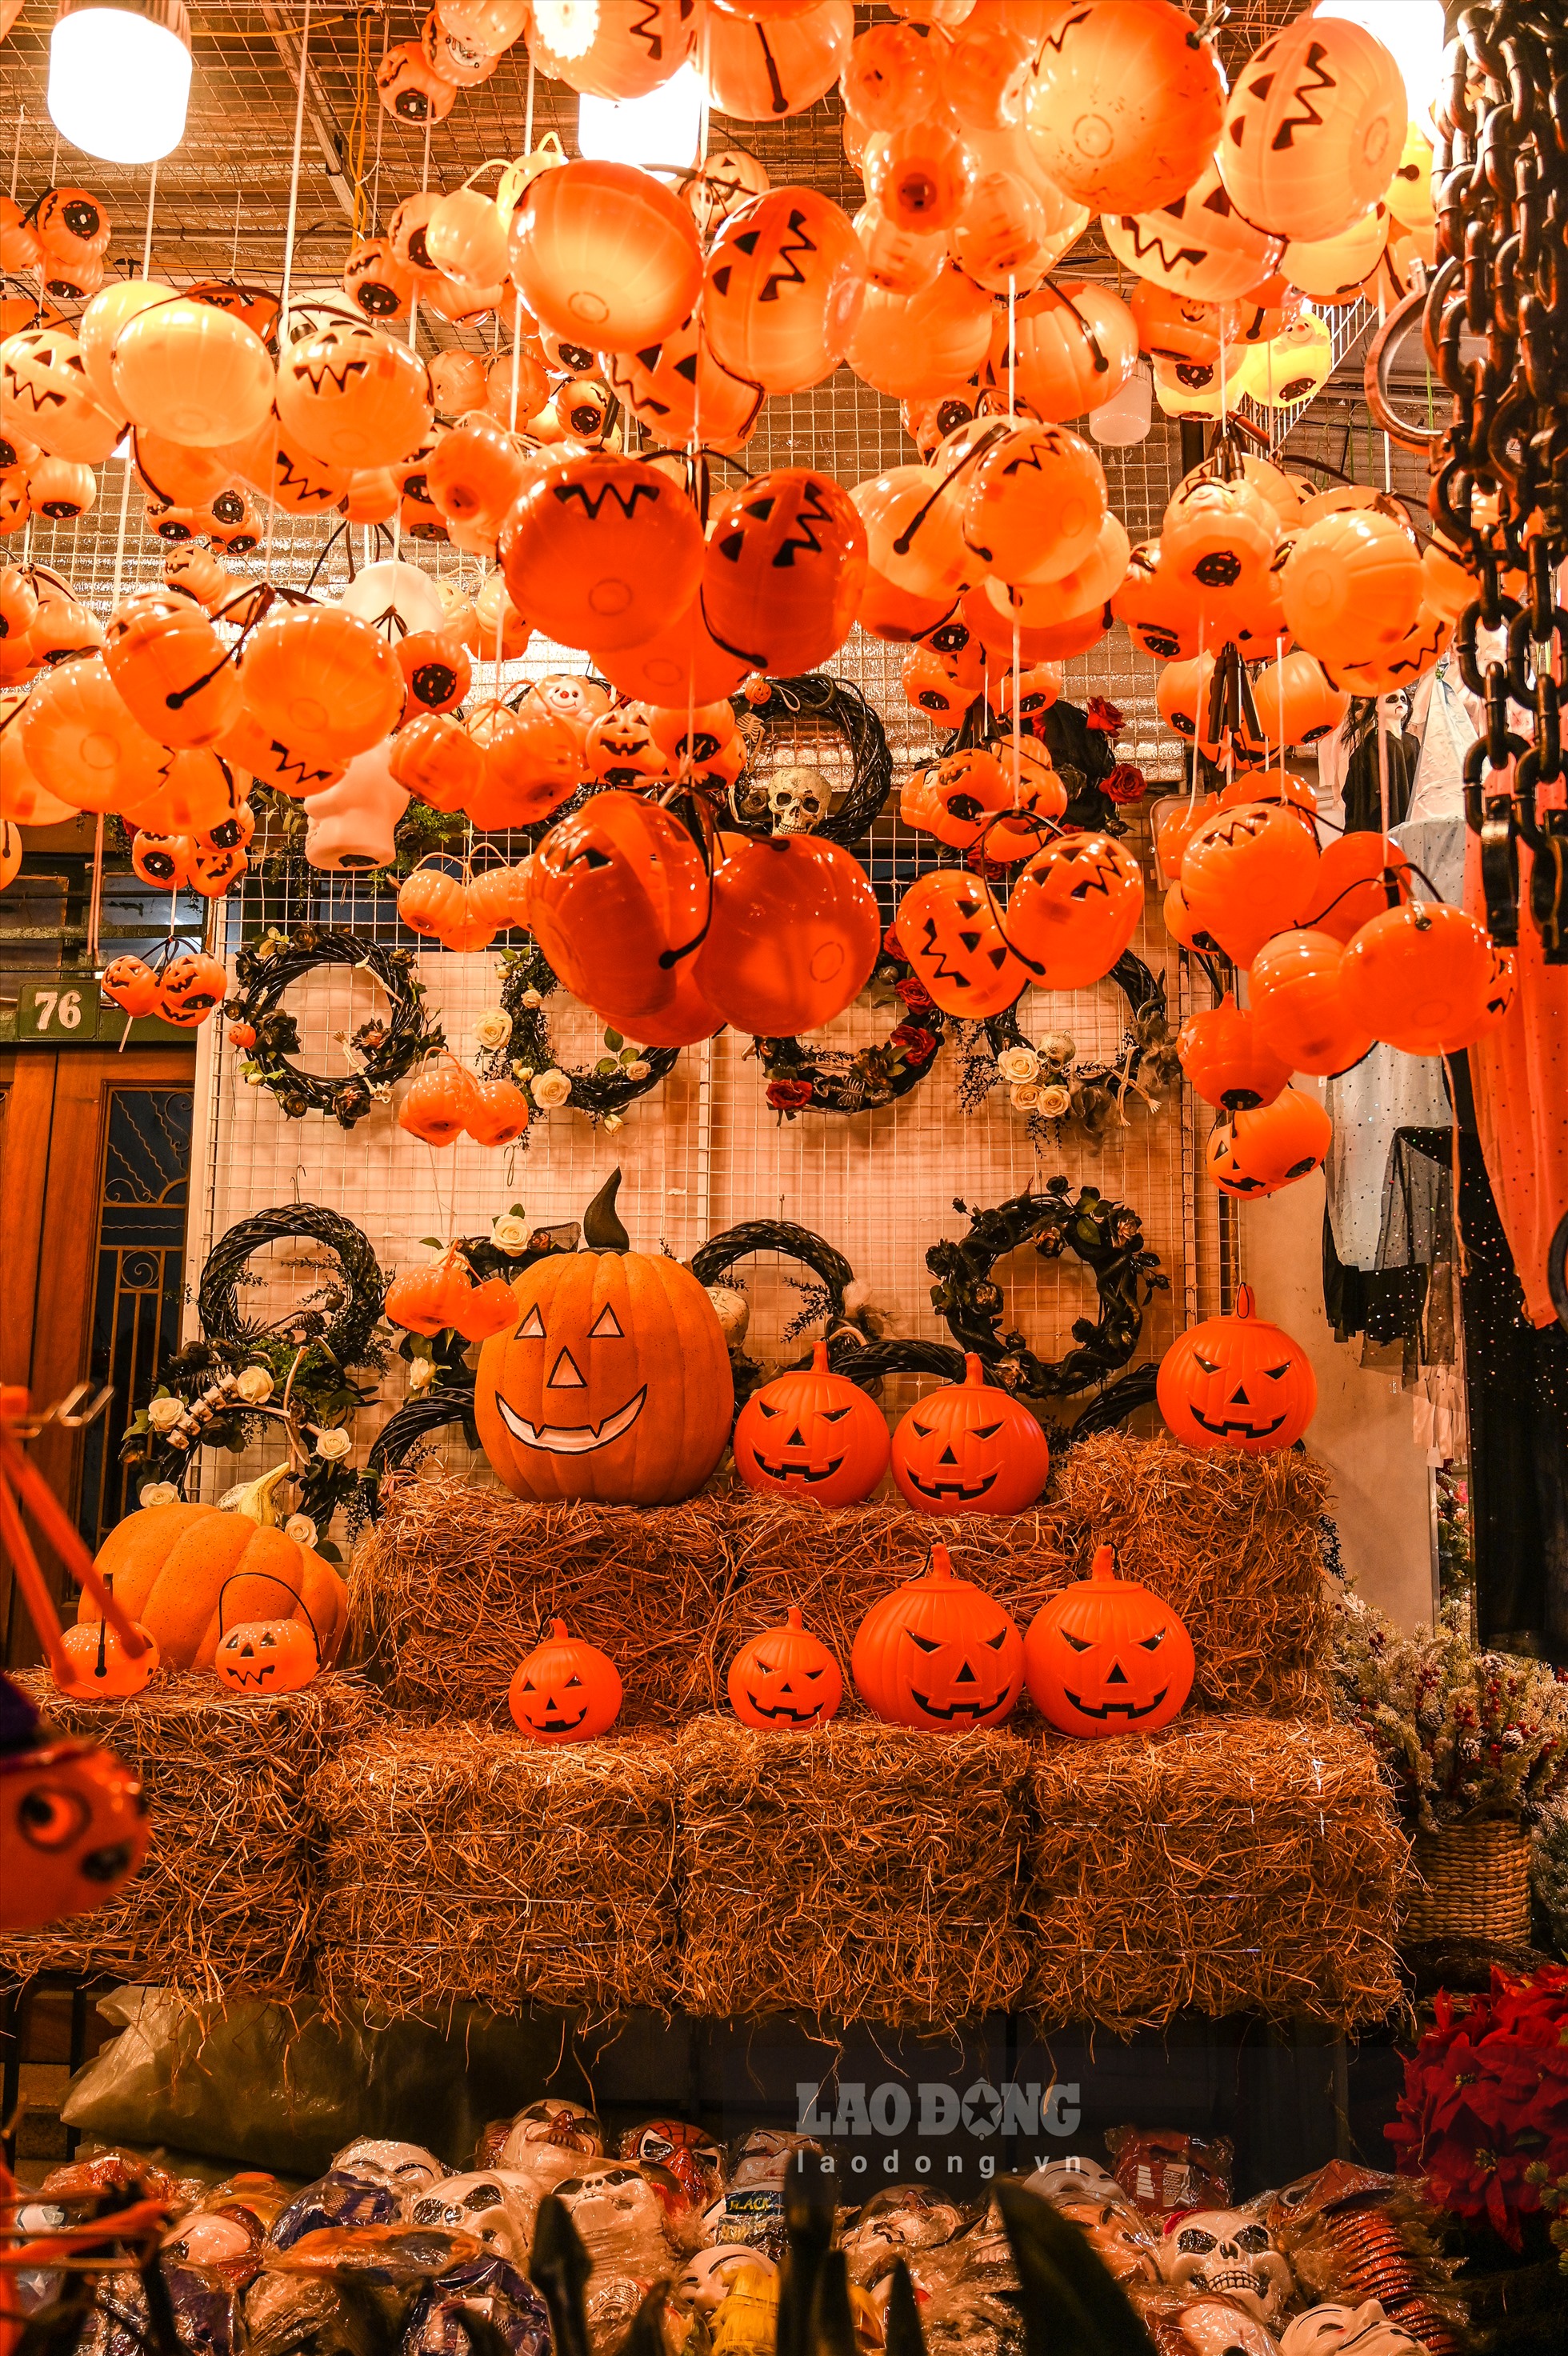 Halloween (tên đầy đủ là All Hallows’ Evening) được biết đến như một ngày lễ tưởng niệm và chào đón những linh hồn đã mất được trở về nhà. Halloween là một lễ hội truyền thống và đặc biệt ở phương Tây với biểu tượng là những trái bí ngô được khoét hình khuôn mặt.